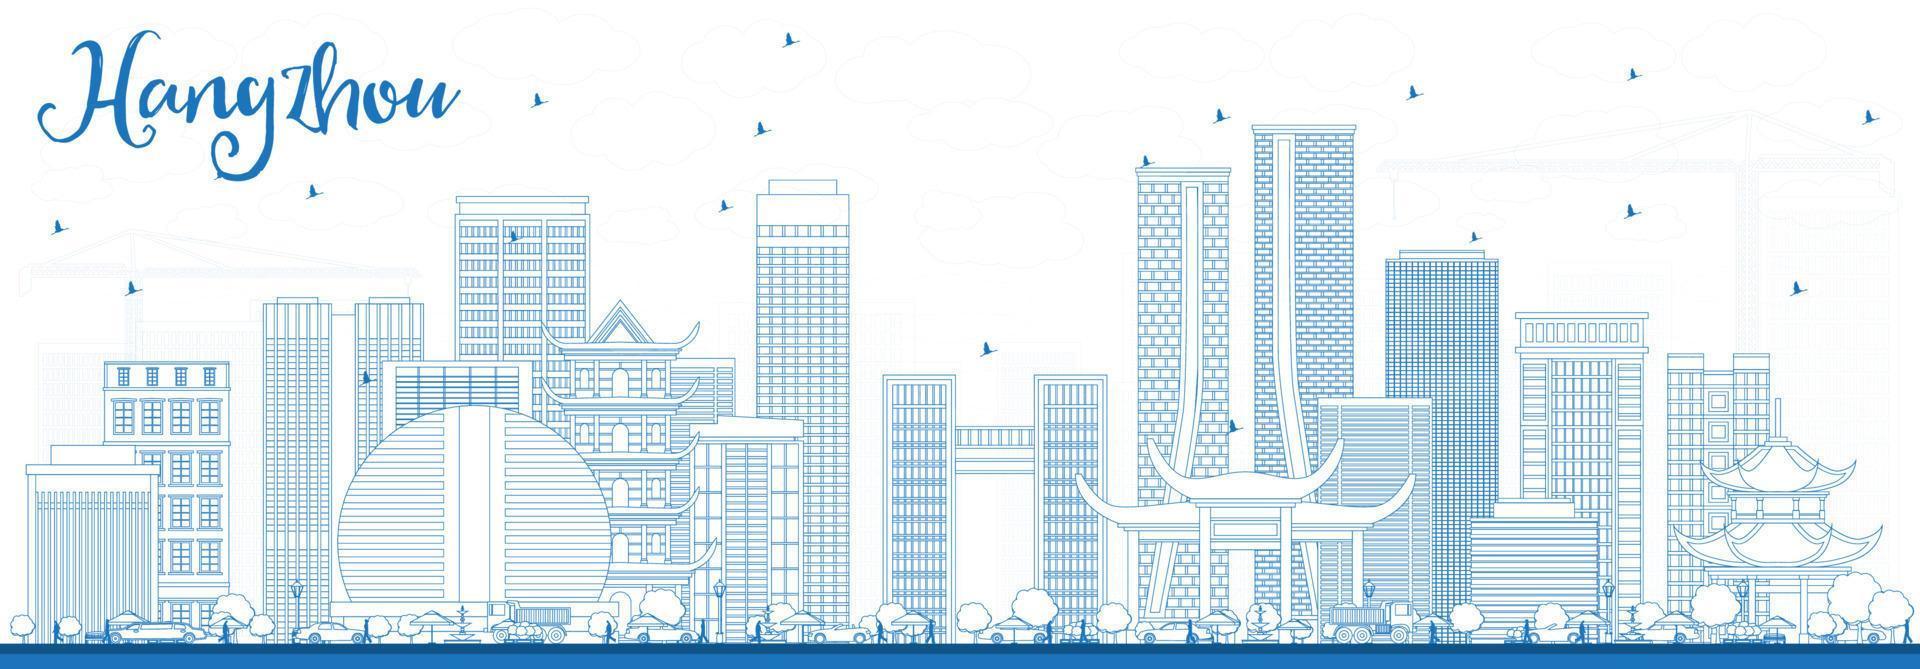 delineie o horizonte de hangzhou com edifícios azuis. vetor